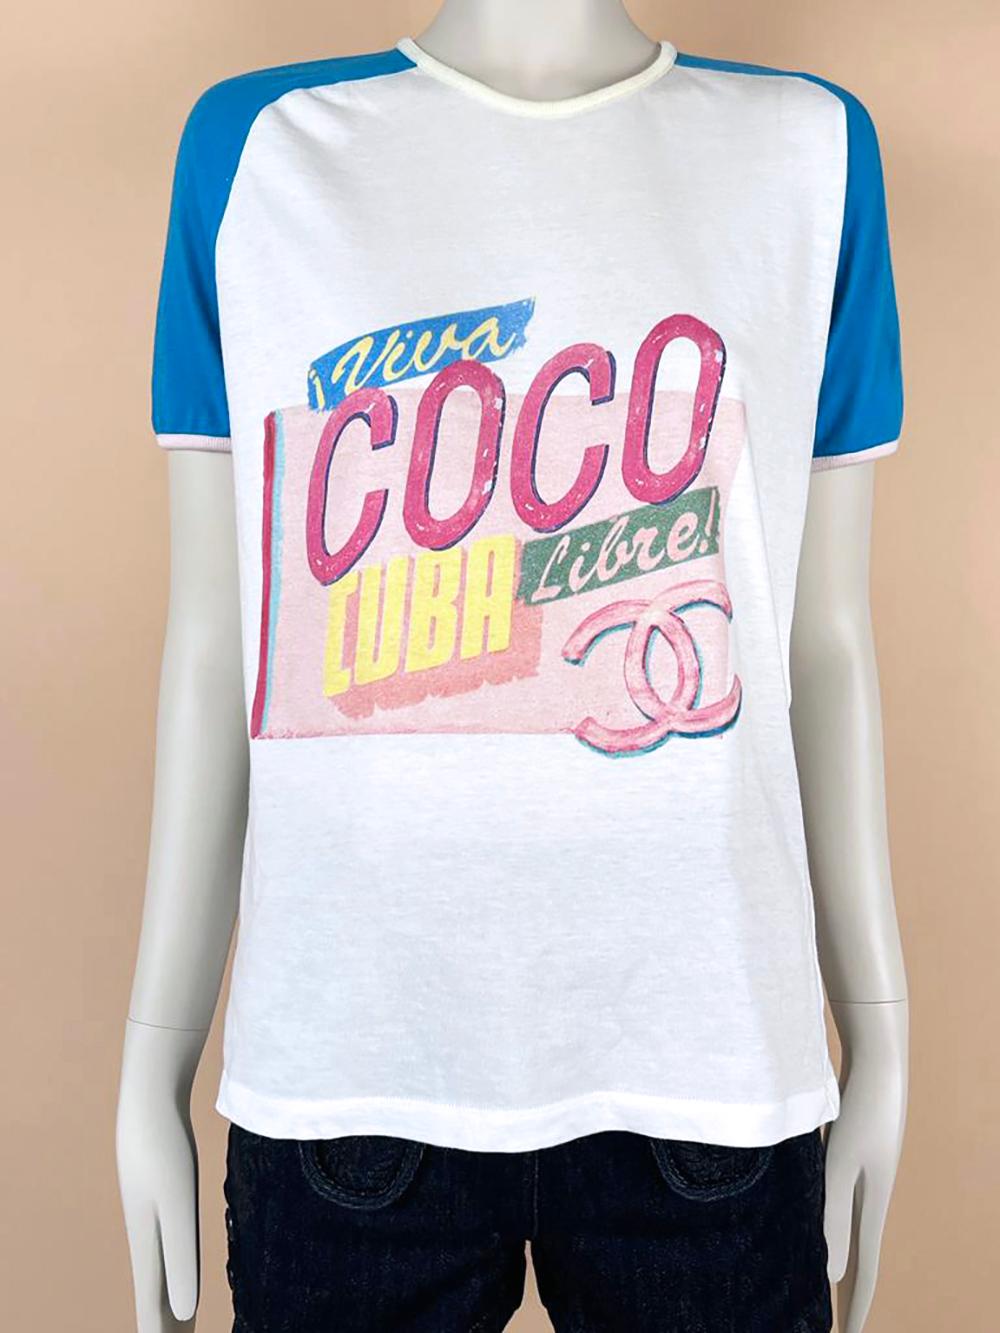 Chanel Coco Cuba Libre CC T-Shirt 2